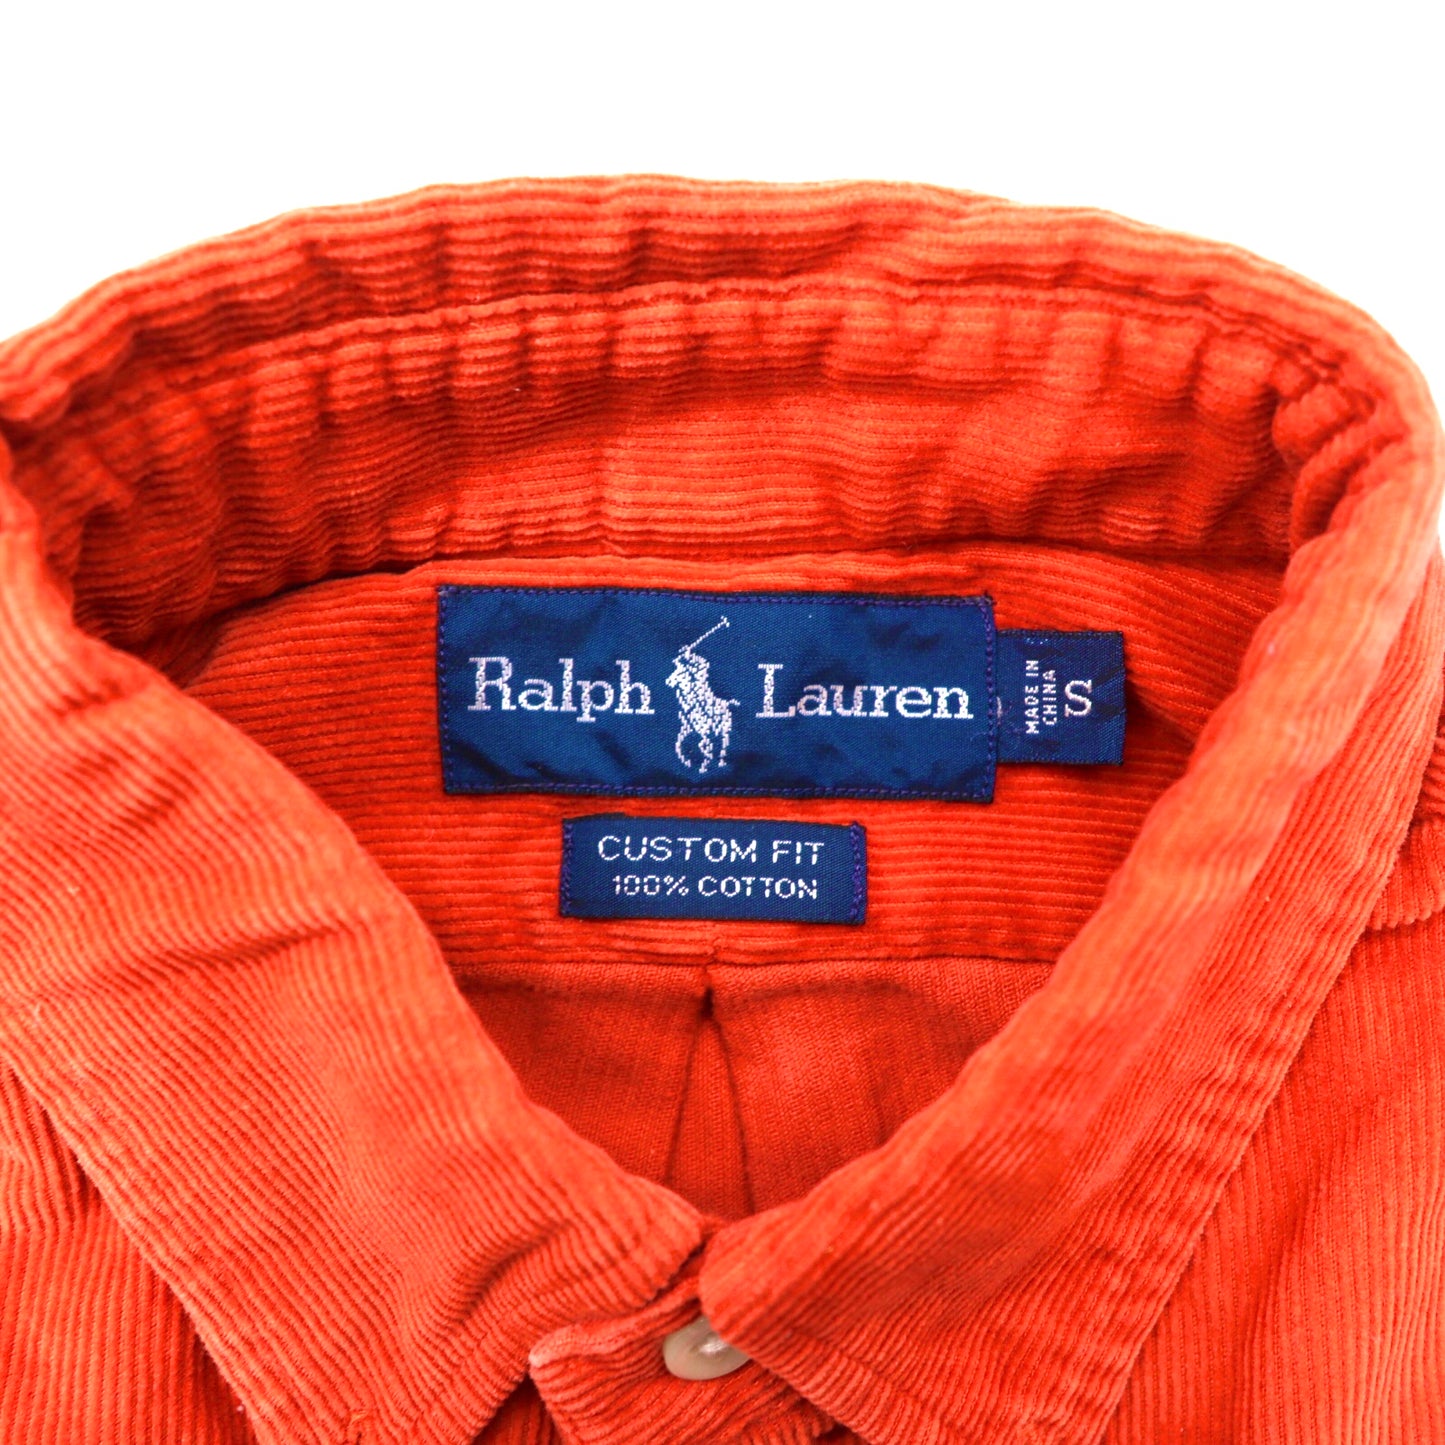 RALPH LAUREN ボタンダウンシャツ S オレンジ コーデュロイ CUSTOM FIT スモールポニー刺繍